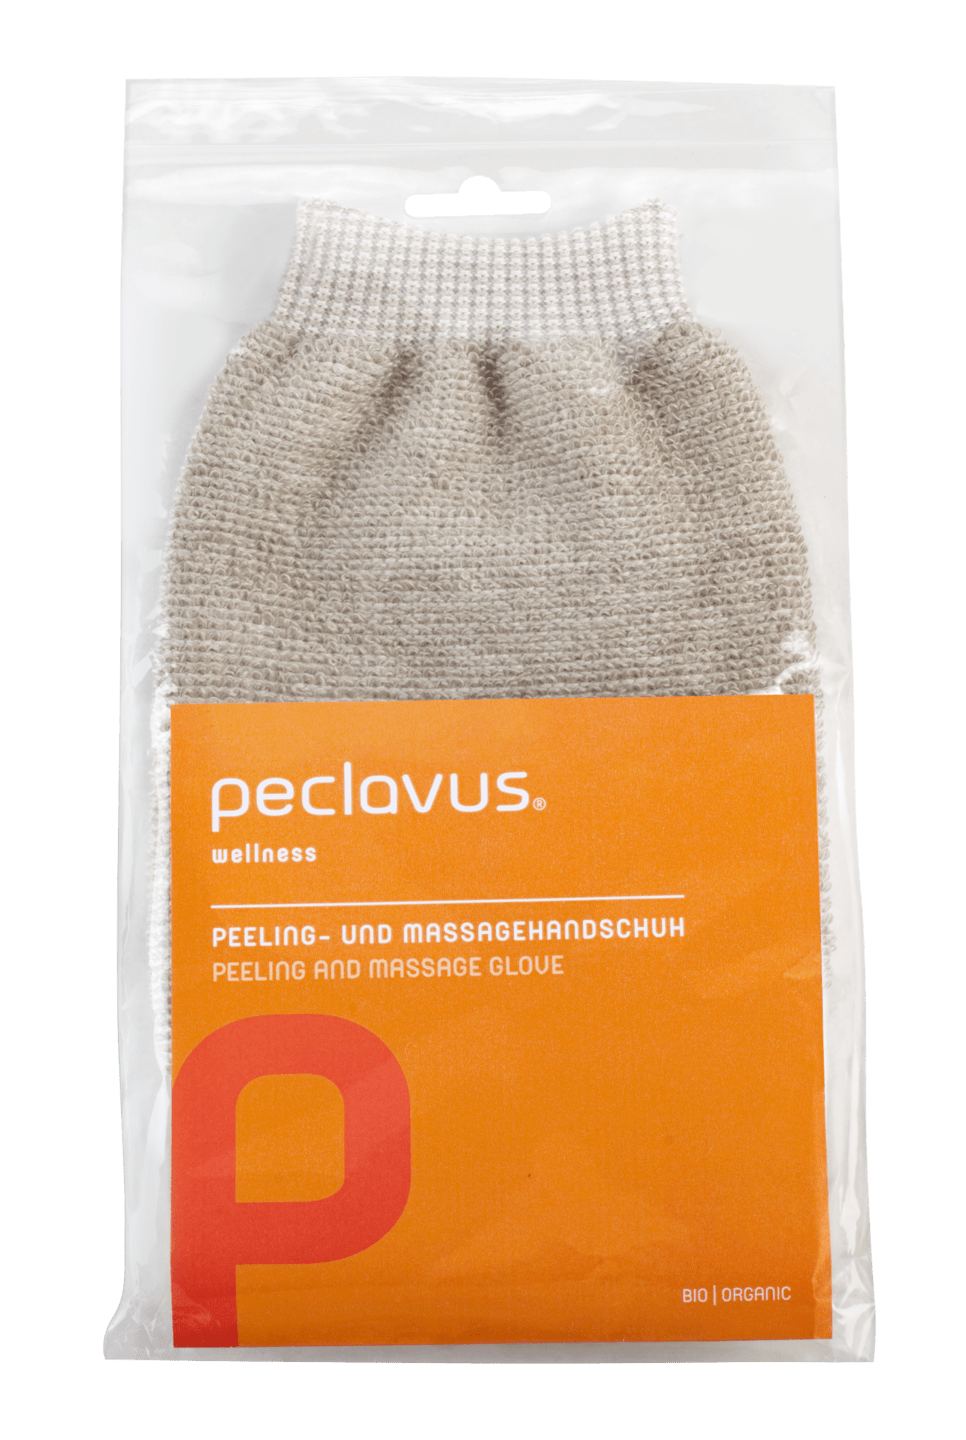 peclavus - Peeling- und Massagehandschuh